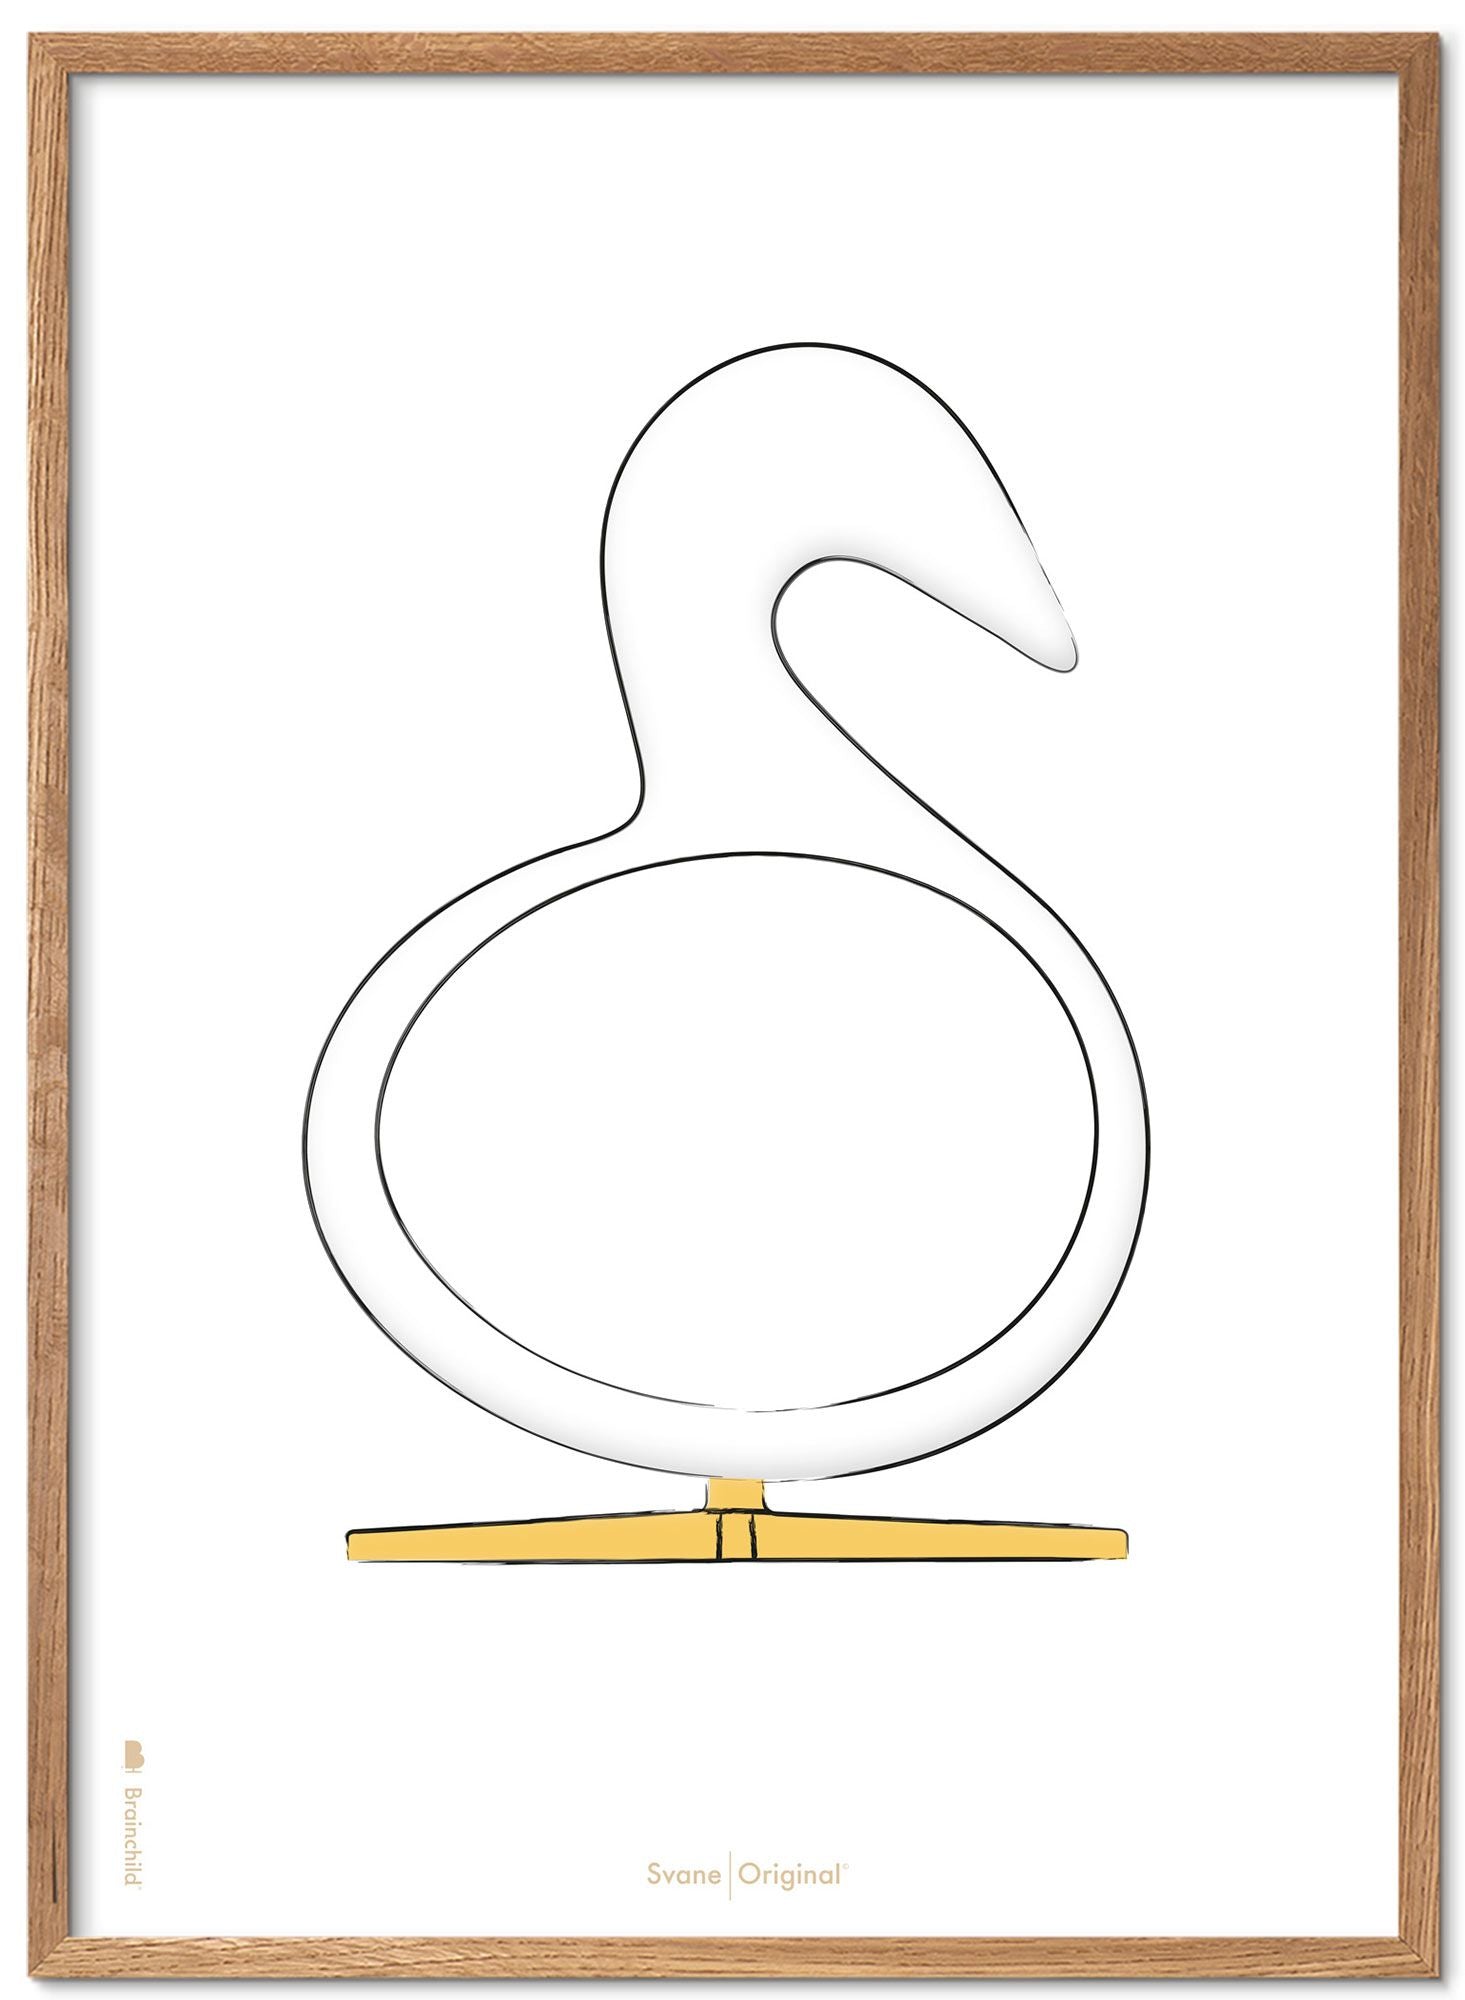 Schema poster di schizzi di disegno del cigno da gioco in legno chiaro A5, sfondo bianco